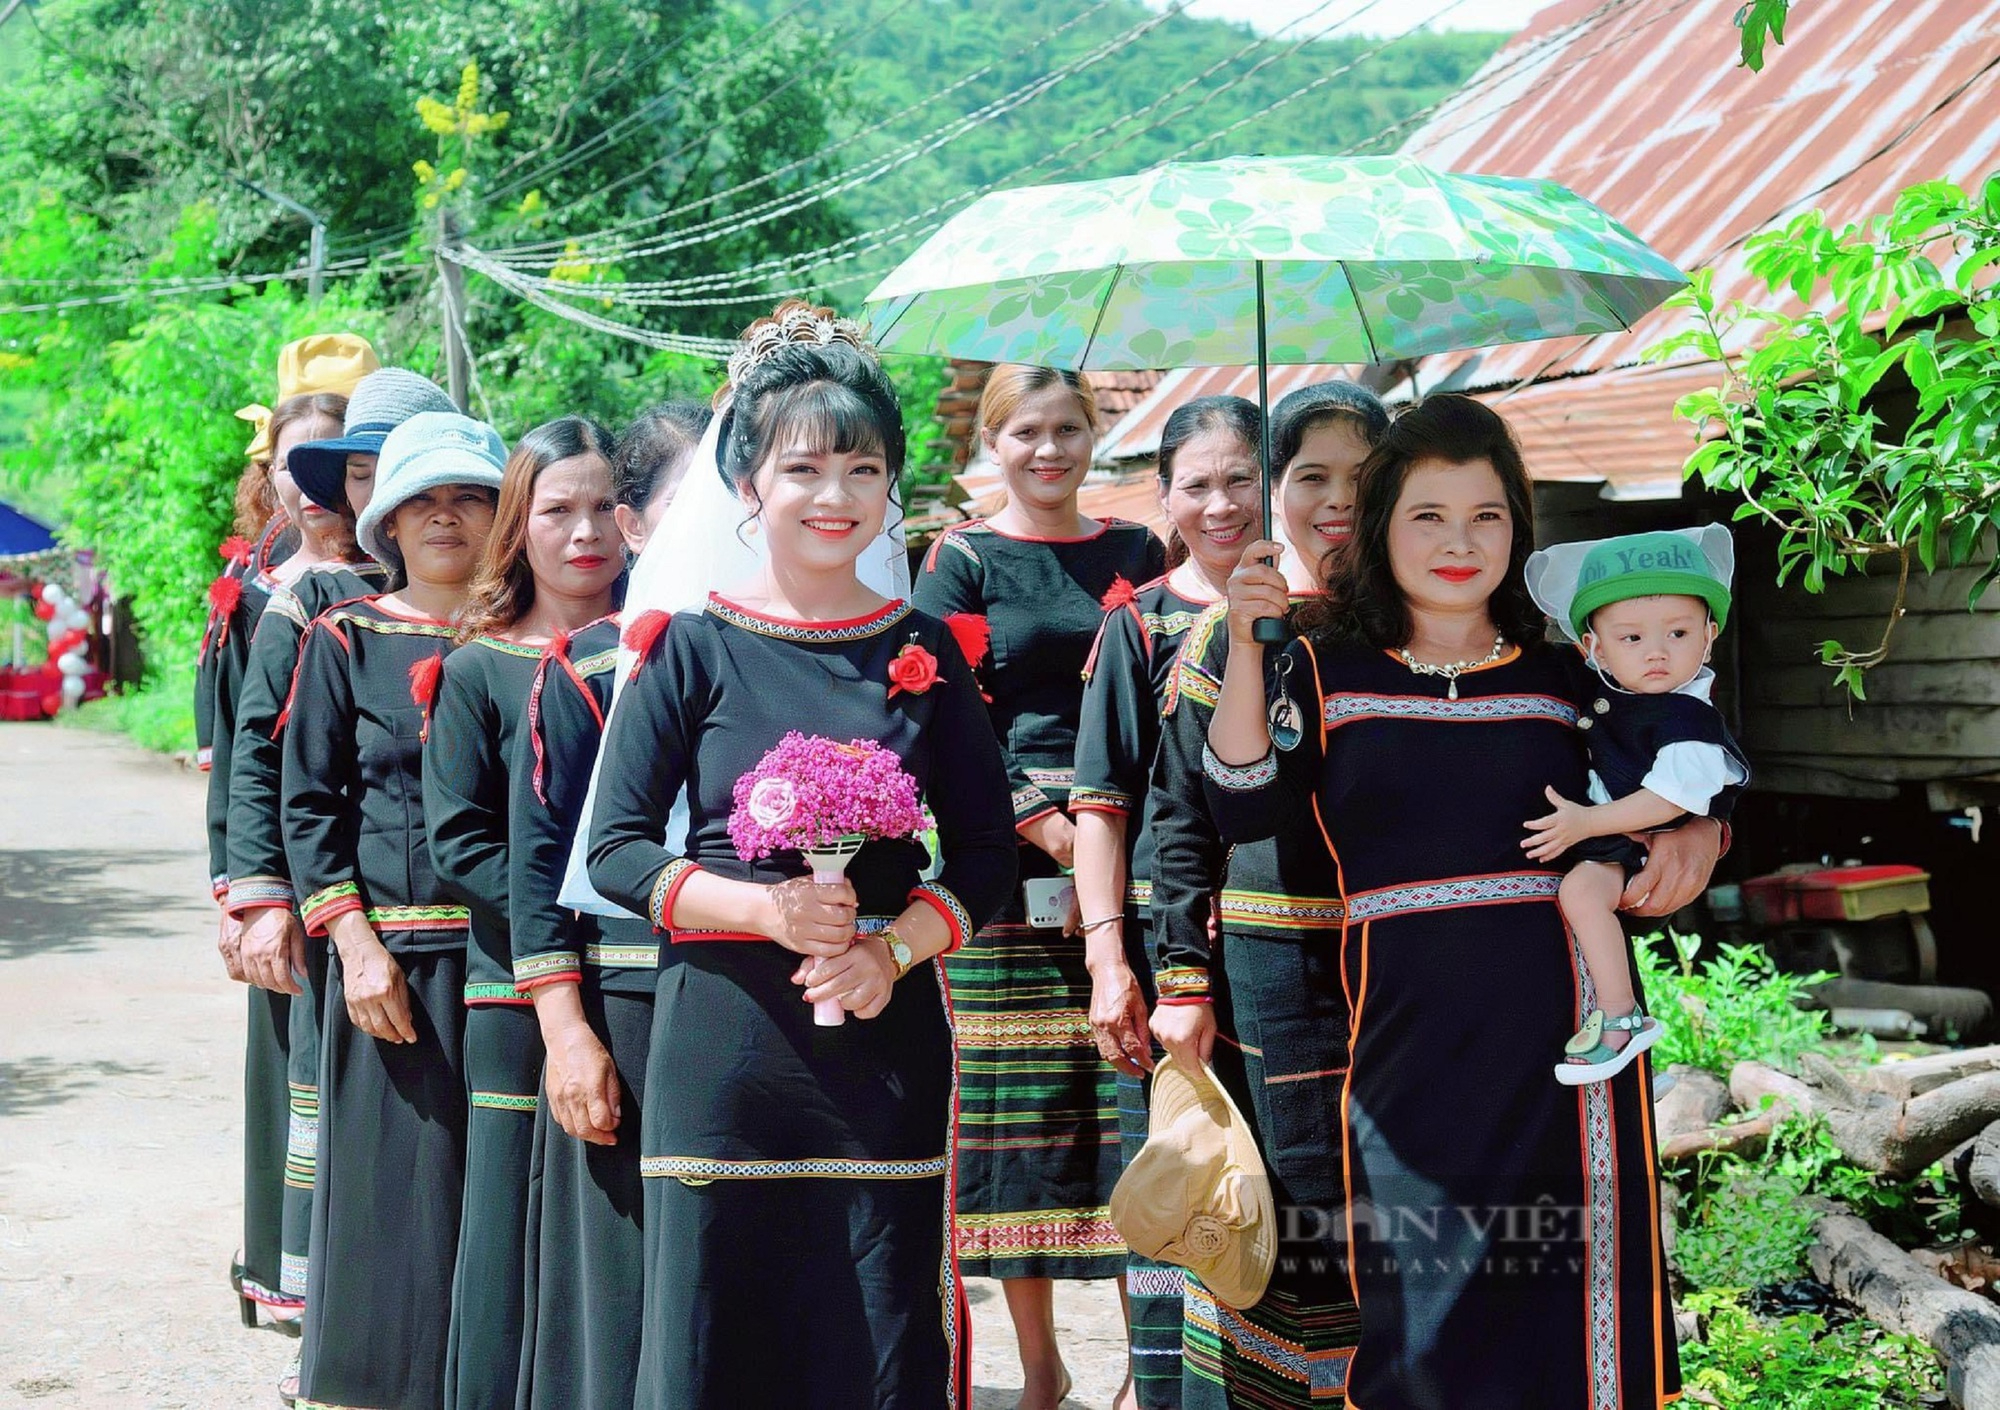 Trang phục truyền thống: Trang phục truyền thống là một phần không thể thiếu của văn hóa mỗi dân tộc. Nó mang trong mình giá trị lịch sử và văn hóa độc đáo. Nếu bạn yêu thích văn hóa và muốn tìm hiểu thêm về sự đa dạng văn hóa của Việt Nam, vẻ đẹp của những bộ trang phục truyền thống sẽ khiến bạn bị cuốn hút.